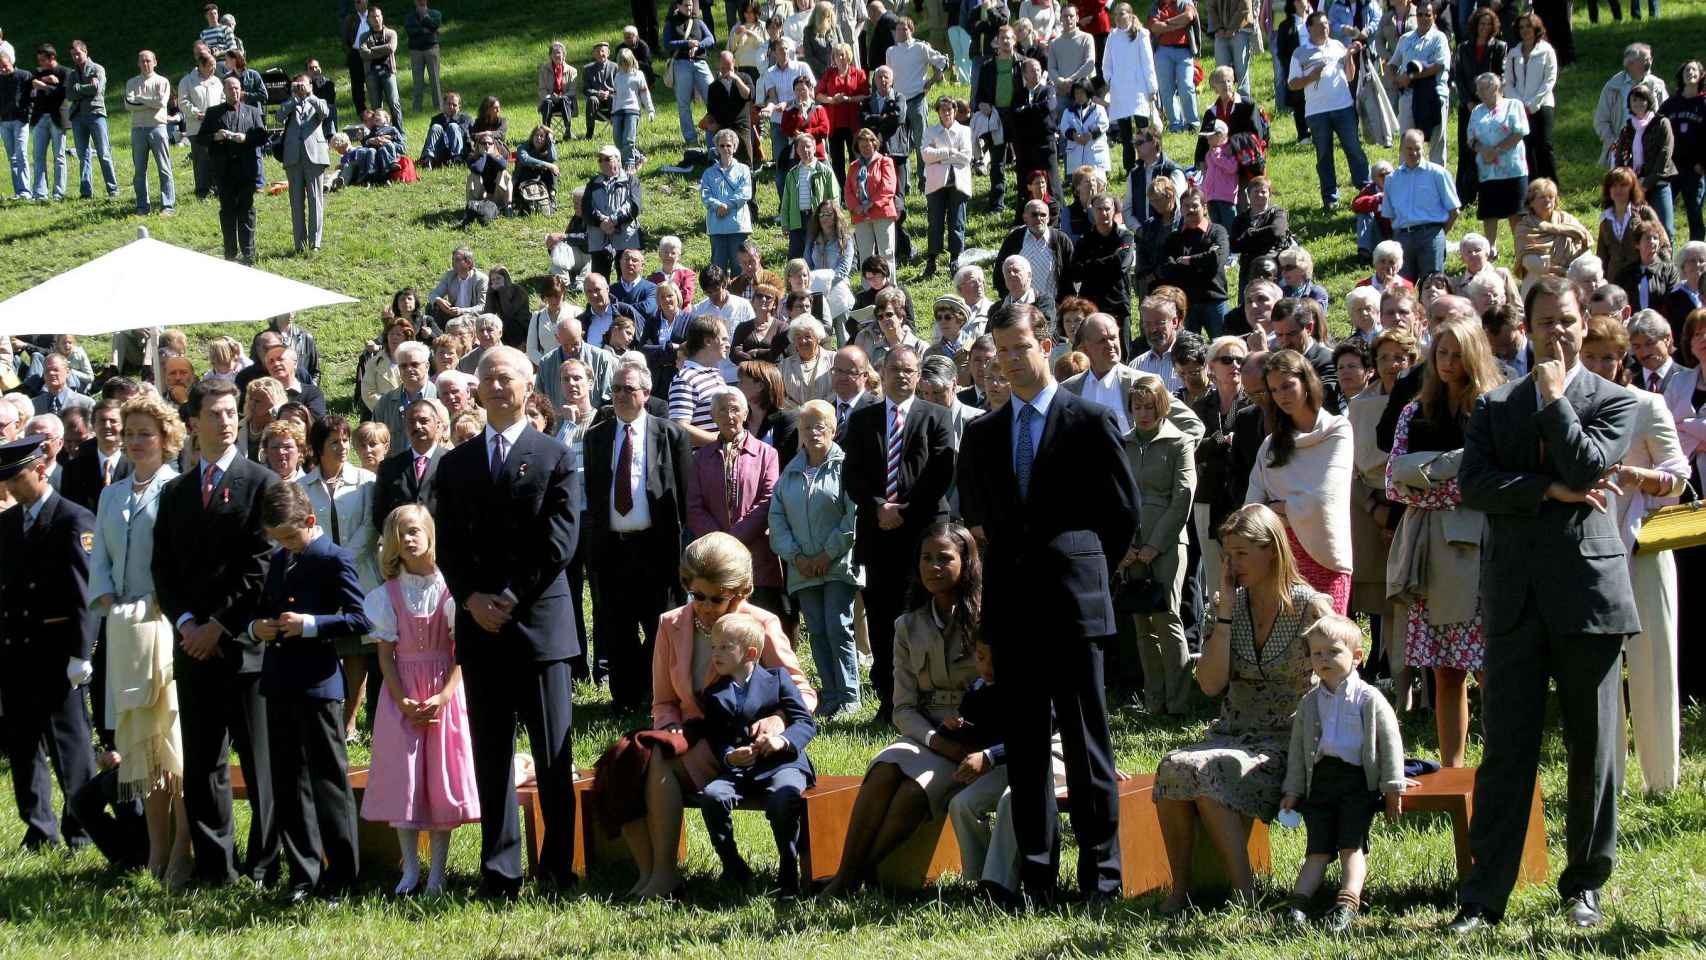 Día Nacional de Liechtenstein, año 2006. El príncipe Constantino aparece en primera fila.